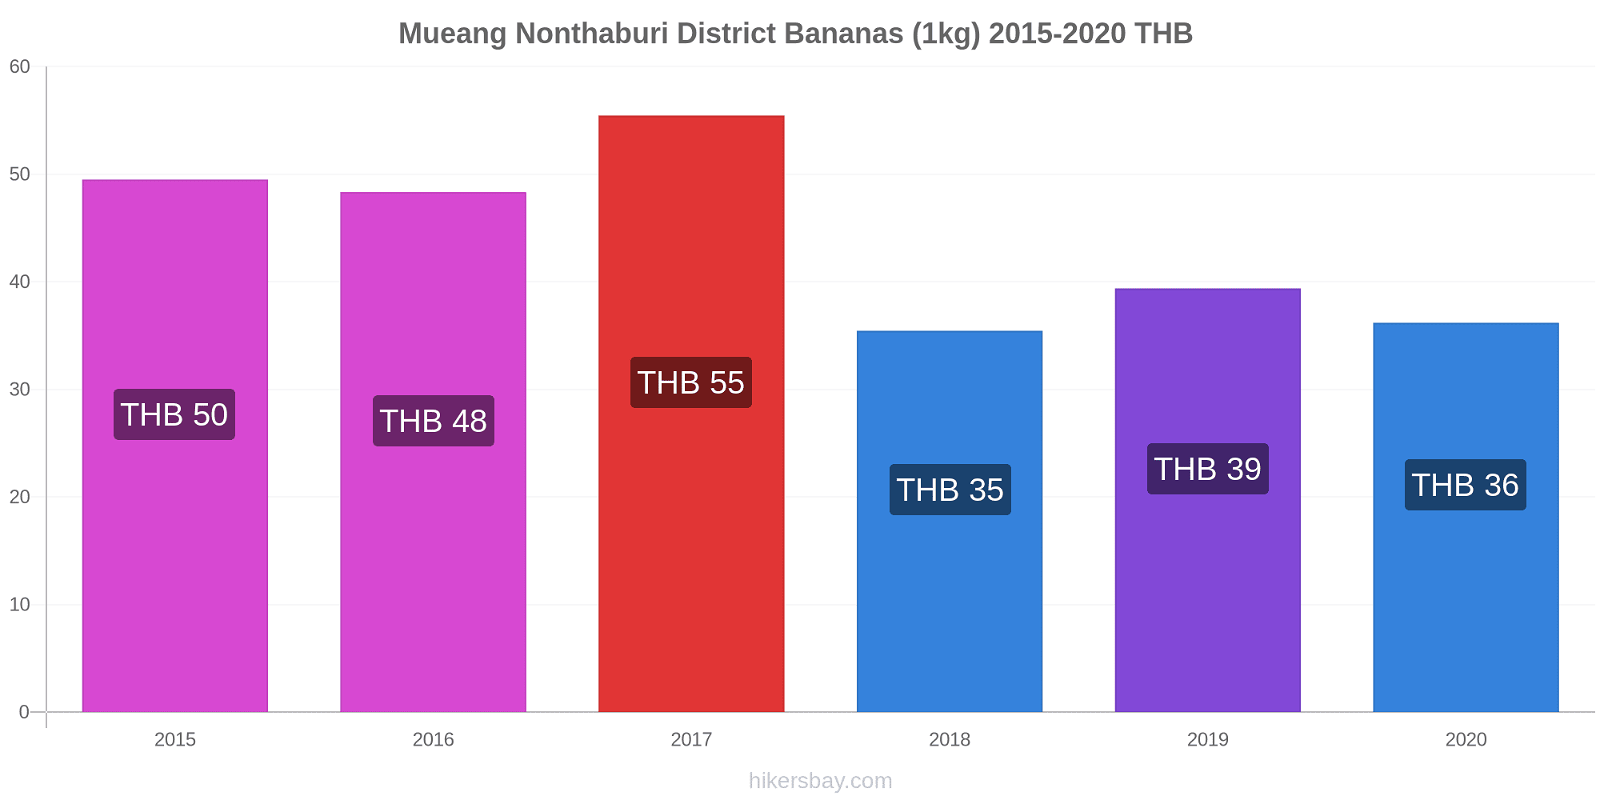 Mueang Nonthaburi District variação de preço Banana (1kg) hikersbay.com